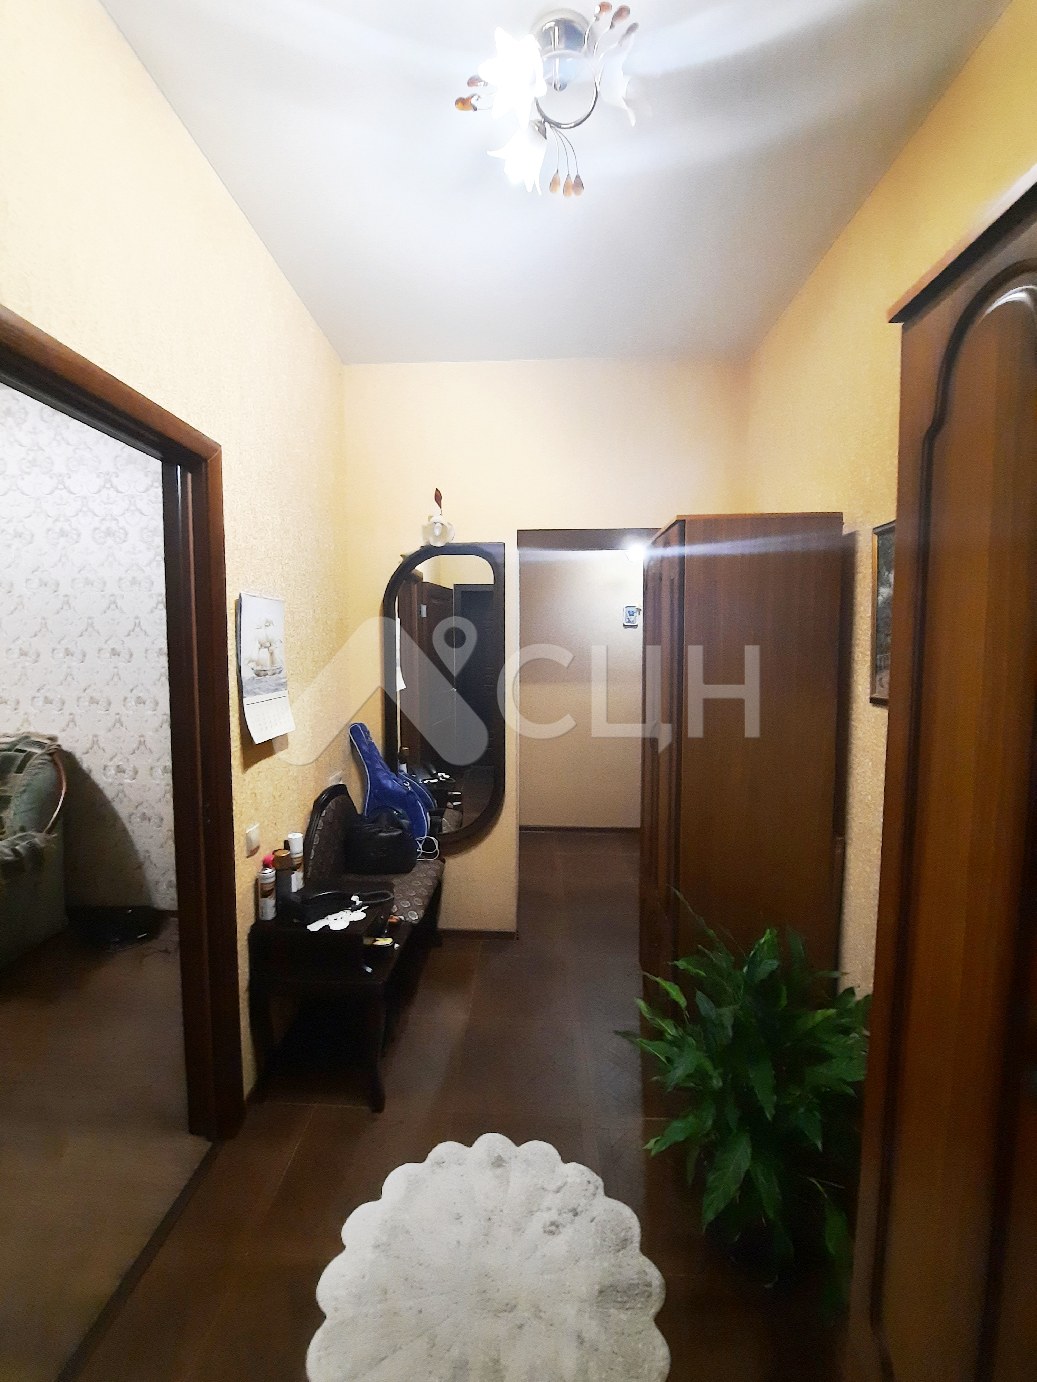 домклик саров квартиры
: Г. Саров, улица Дзержинского, 7, 2-комн квартира, этаж 1 из 3, продажа.